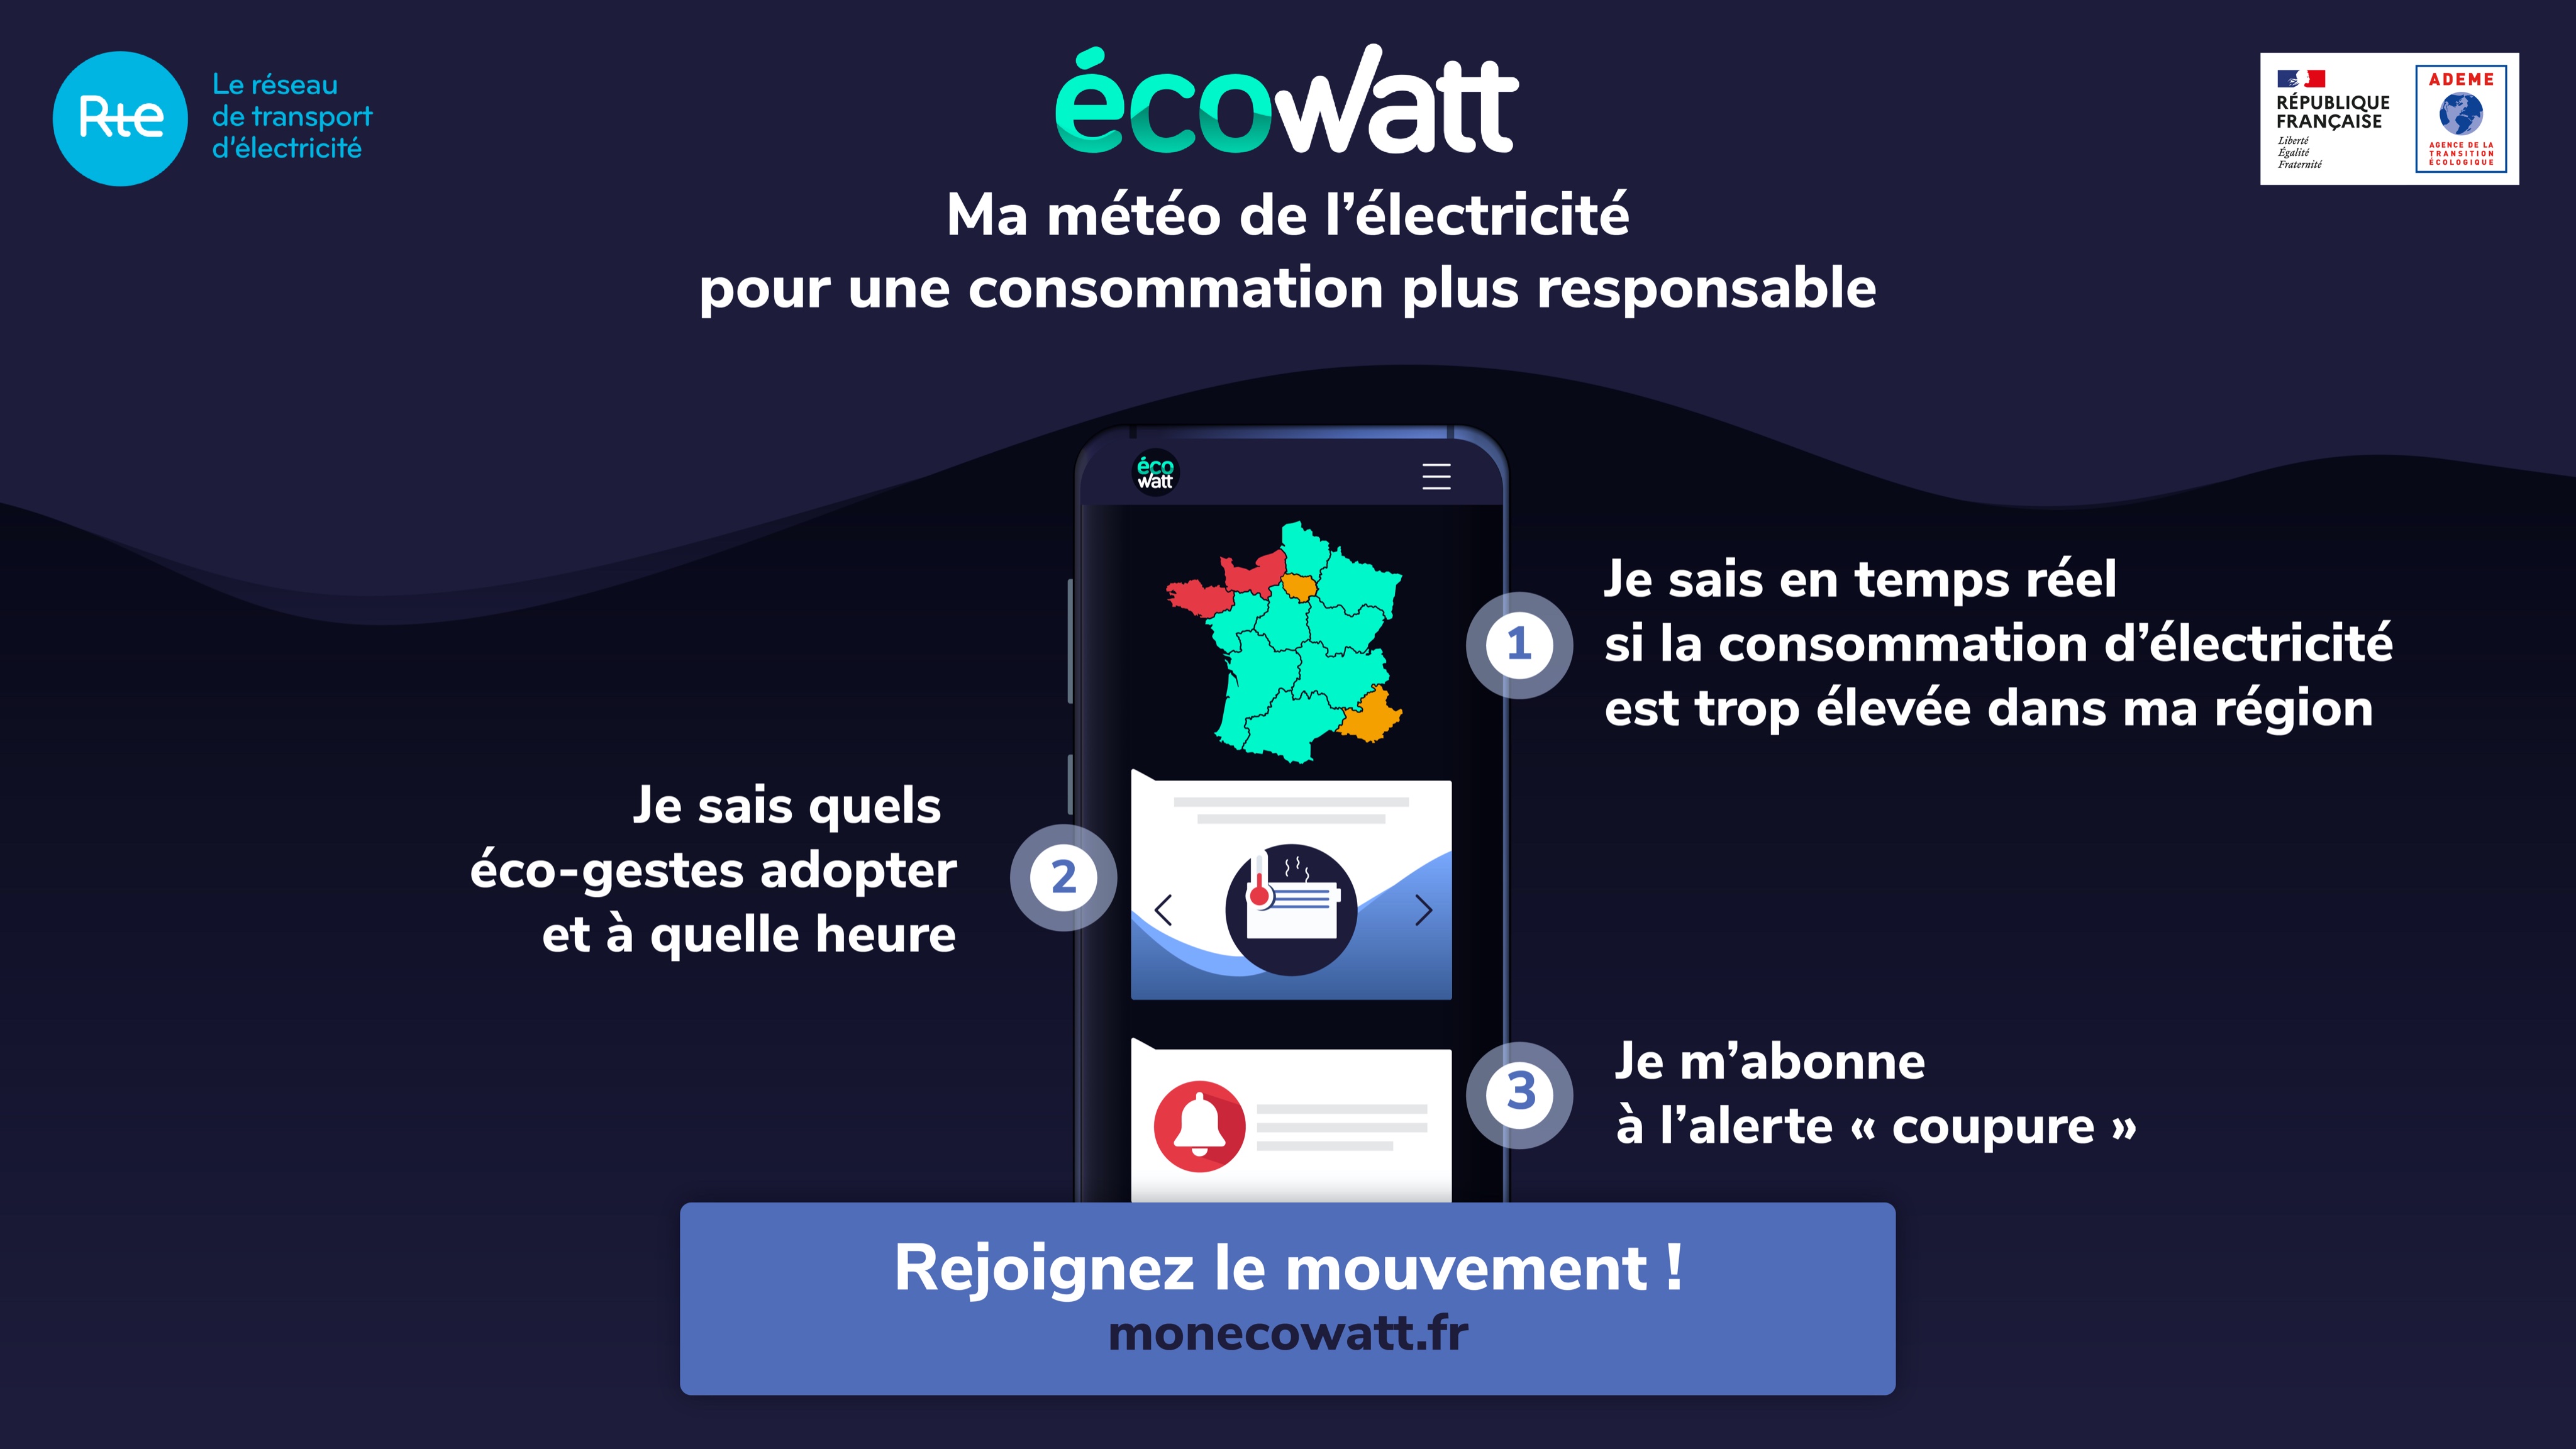 ecowatt comsommation électricté responsable